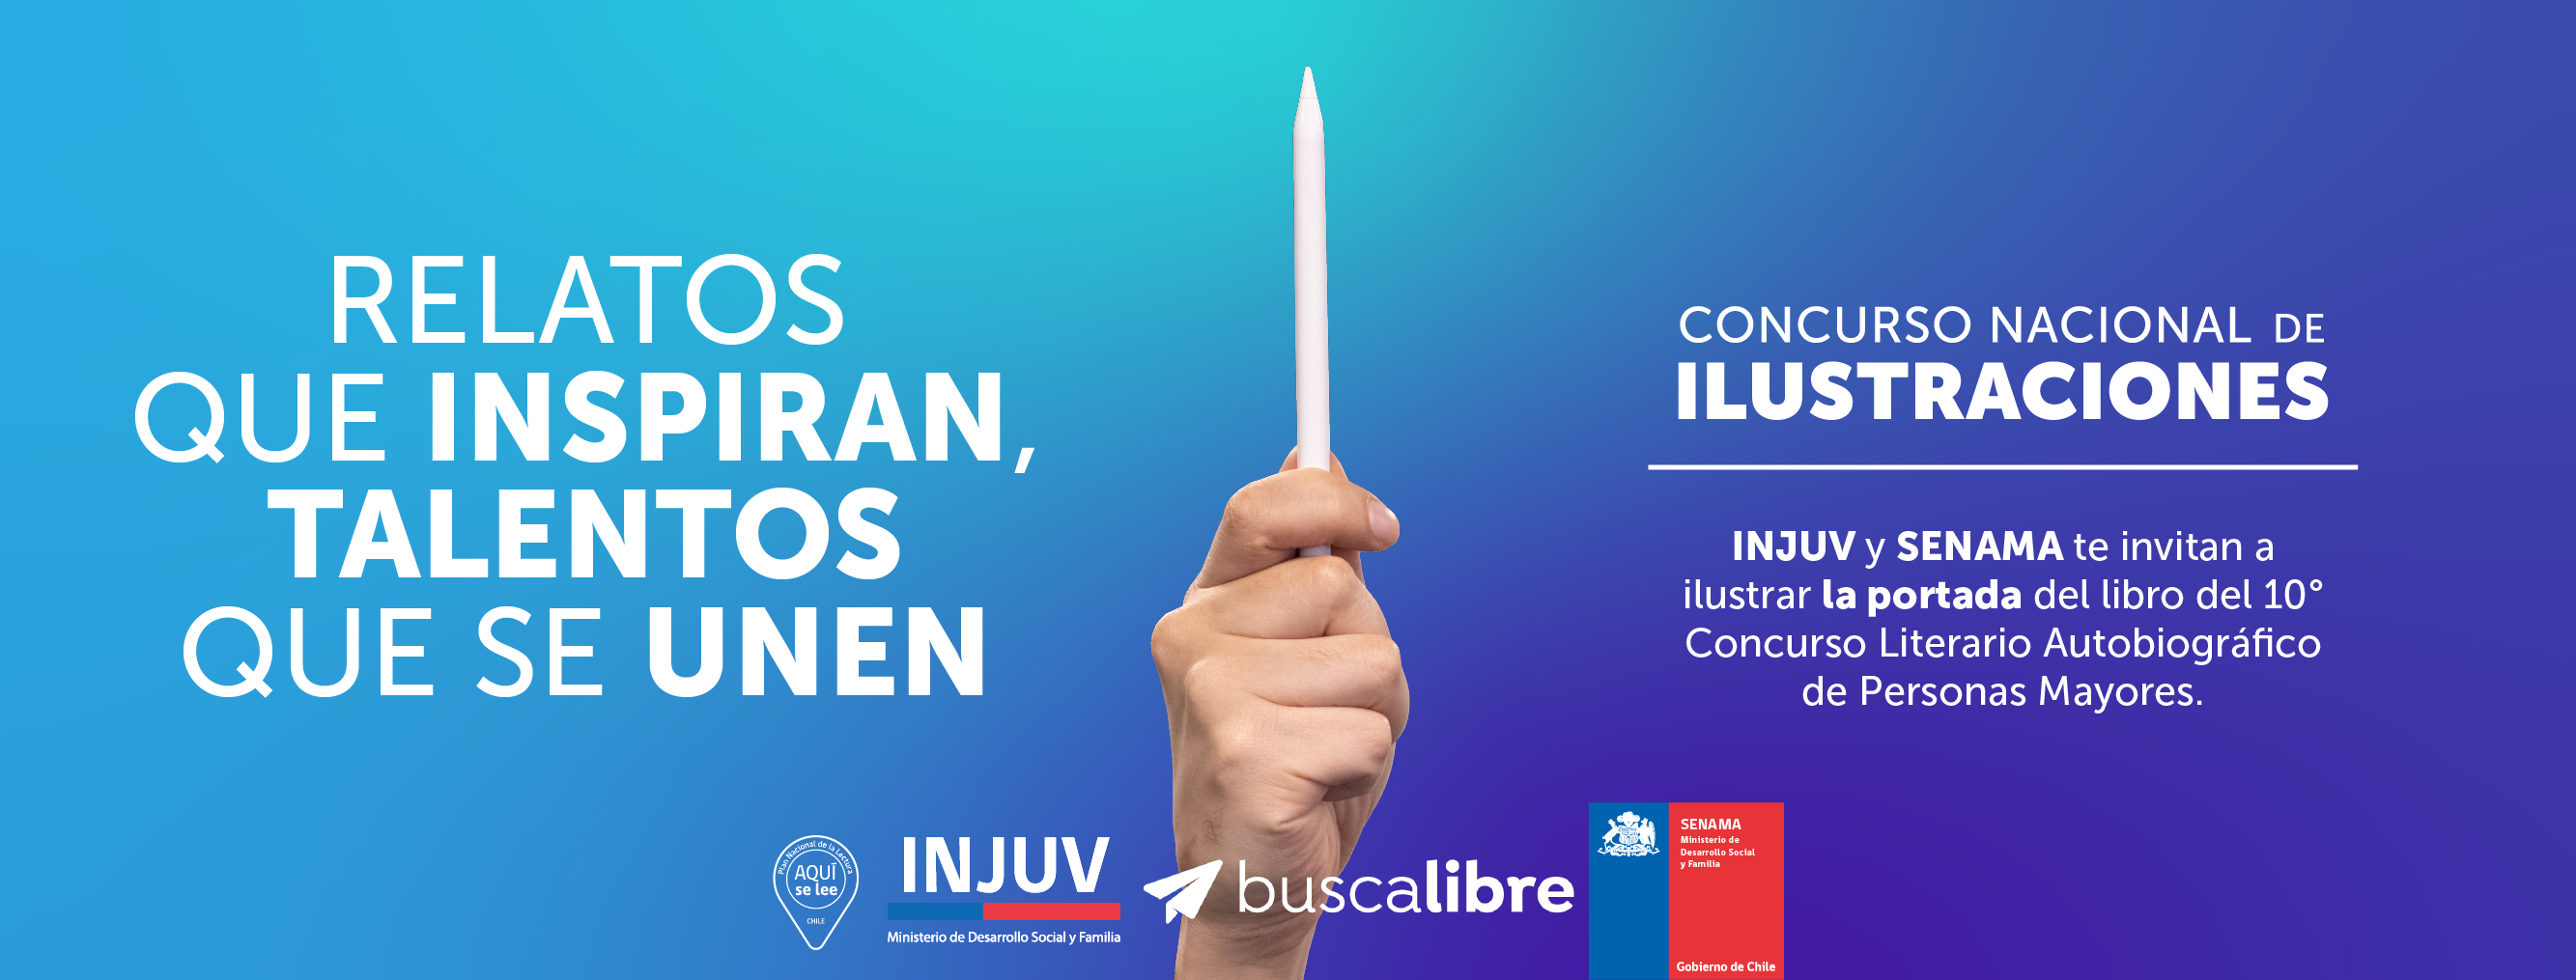 INJUV lanza concurso nacional de ilustraciones